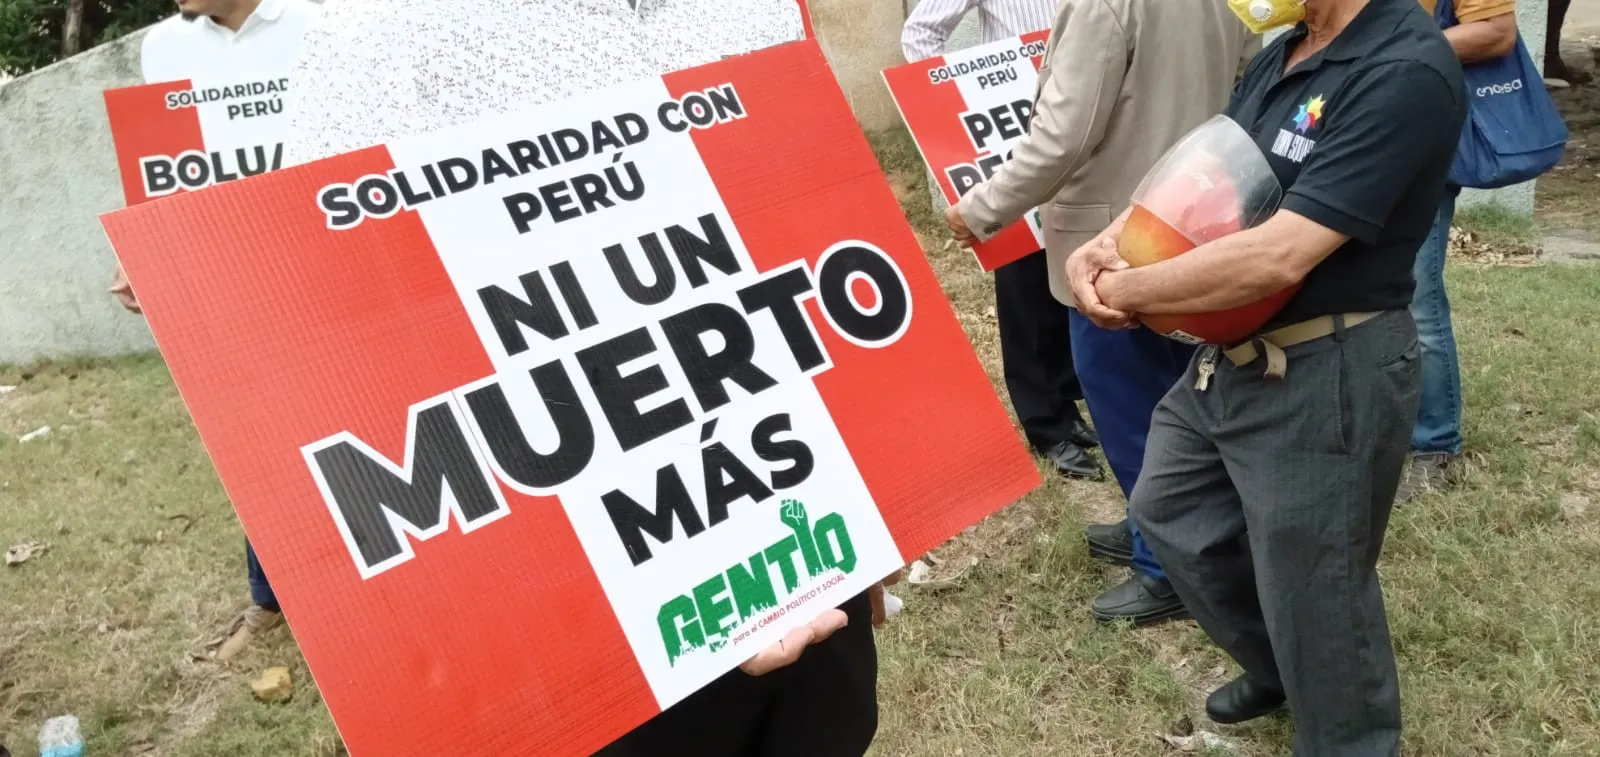 Grupo político de Santiago manifiesta solidaridad con Perú y exige adelantar elecciones